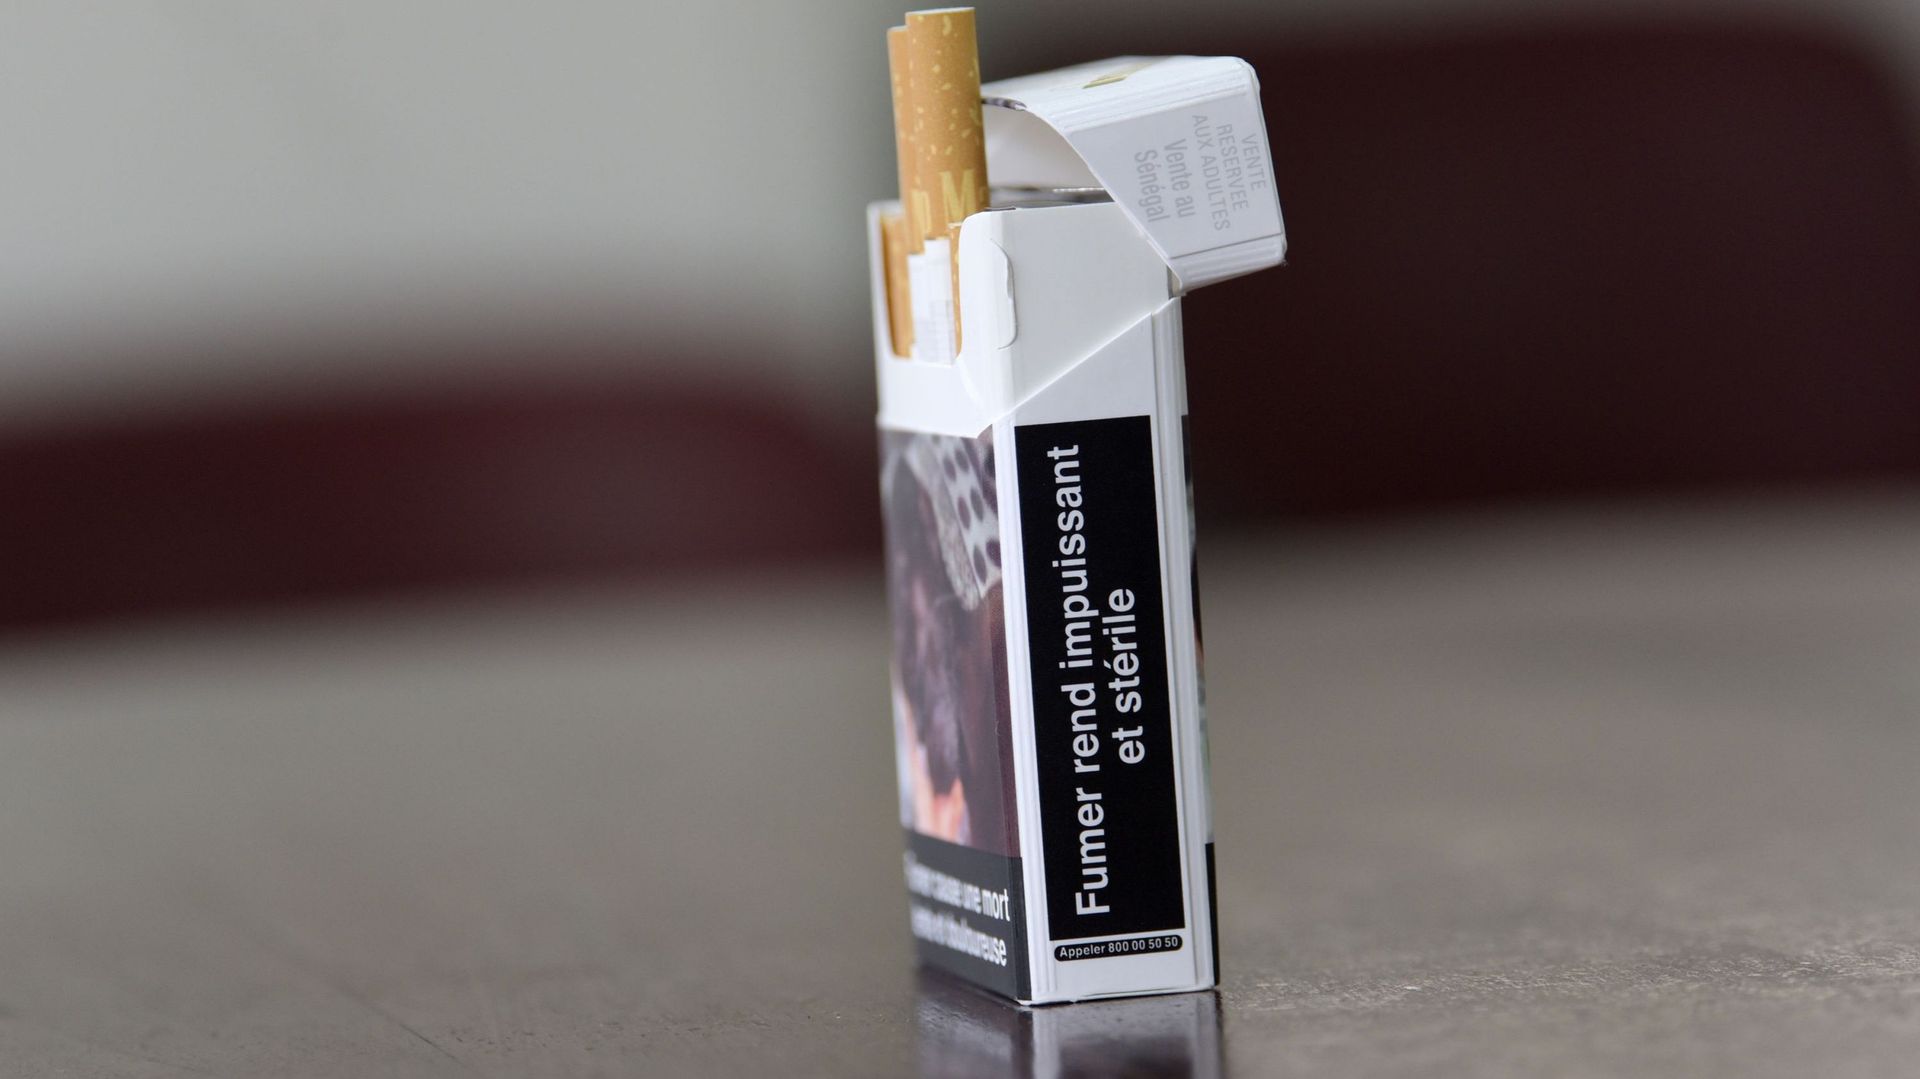 Le gouvernement a décidé d'imposer le paquet neutre pour les cigarettes et le tabac à rouler